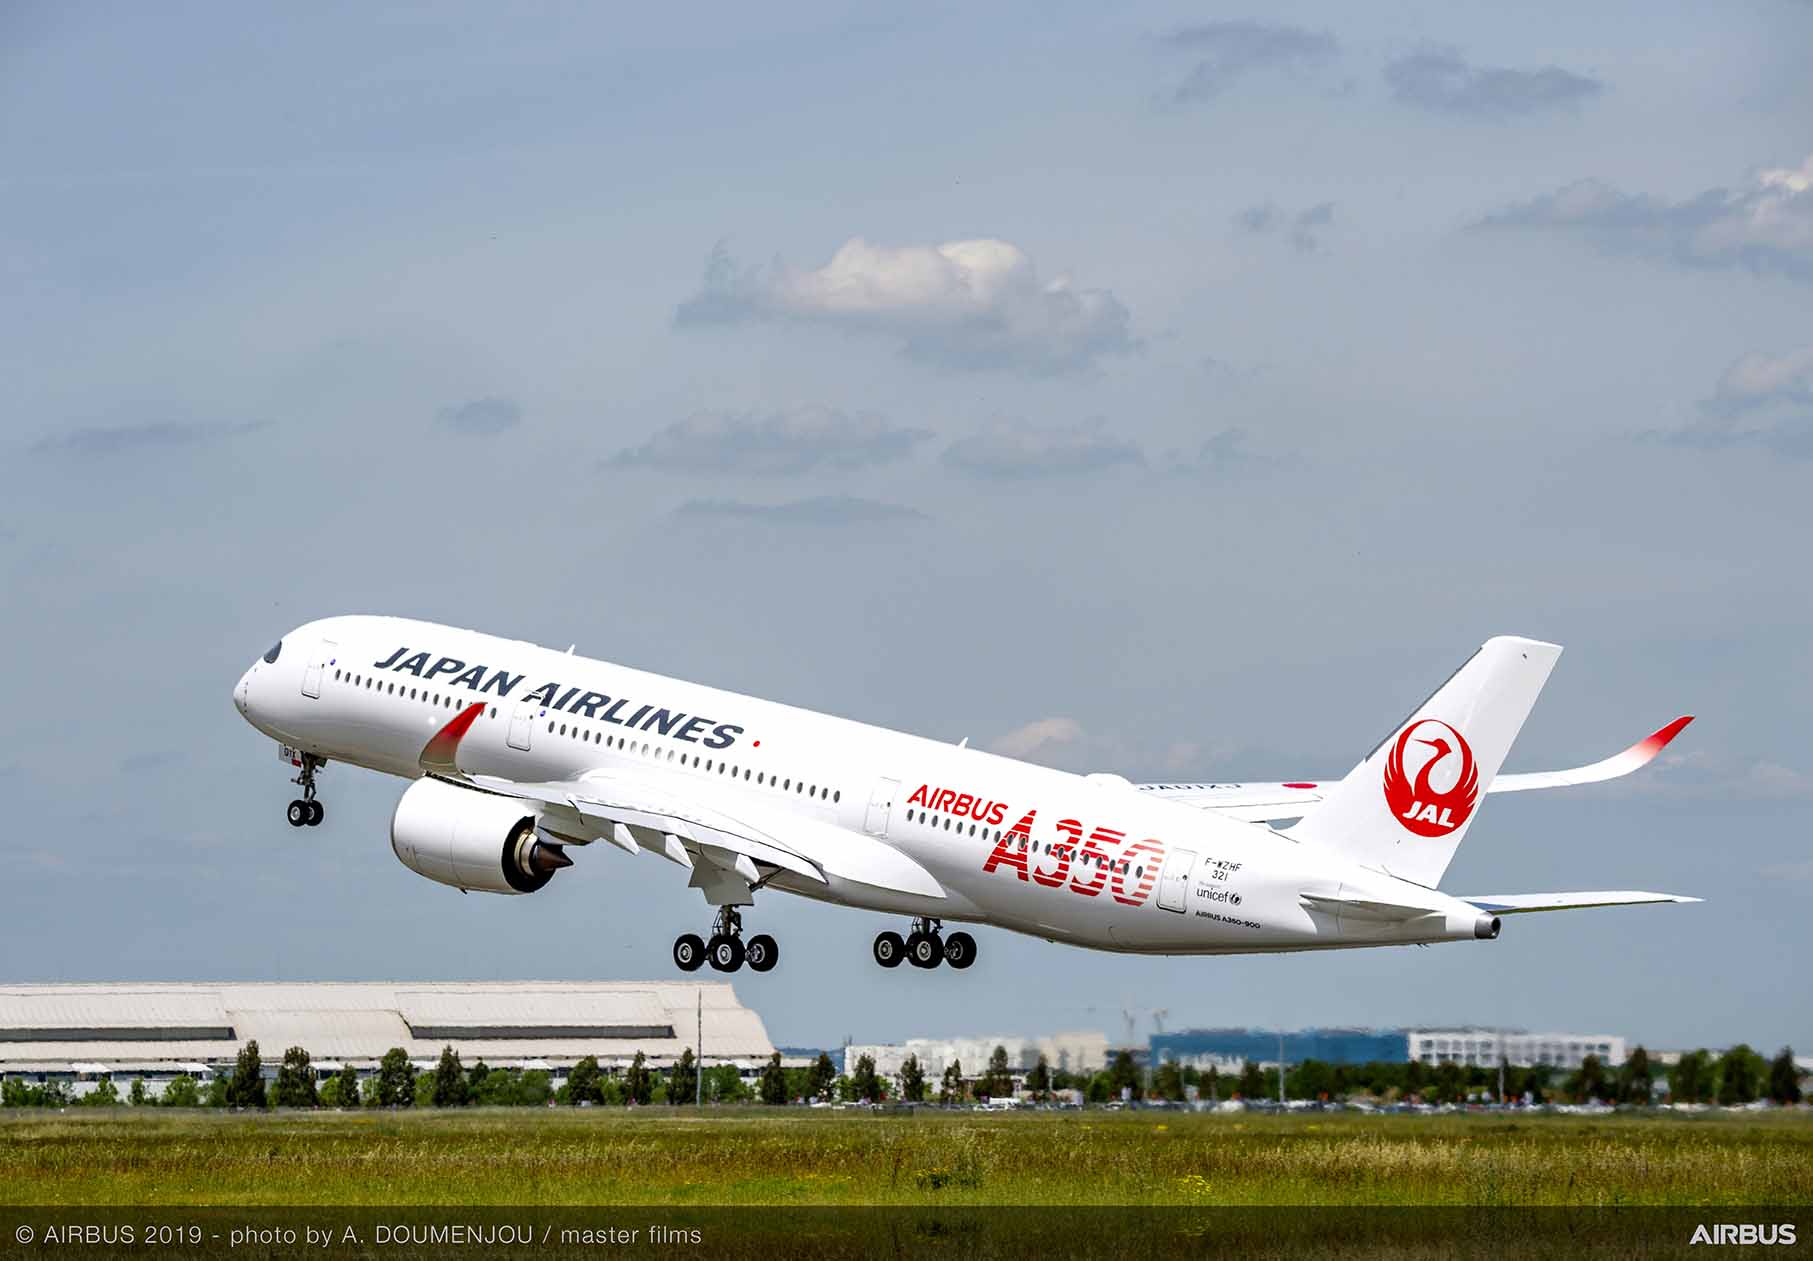 Japan Airlines cancel promotional offer after website crash